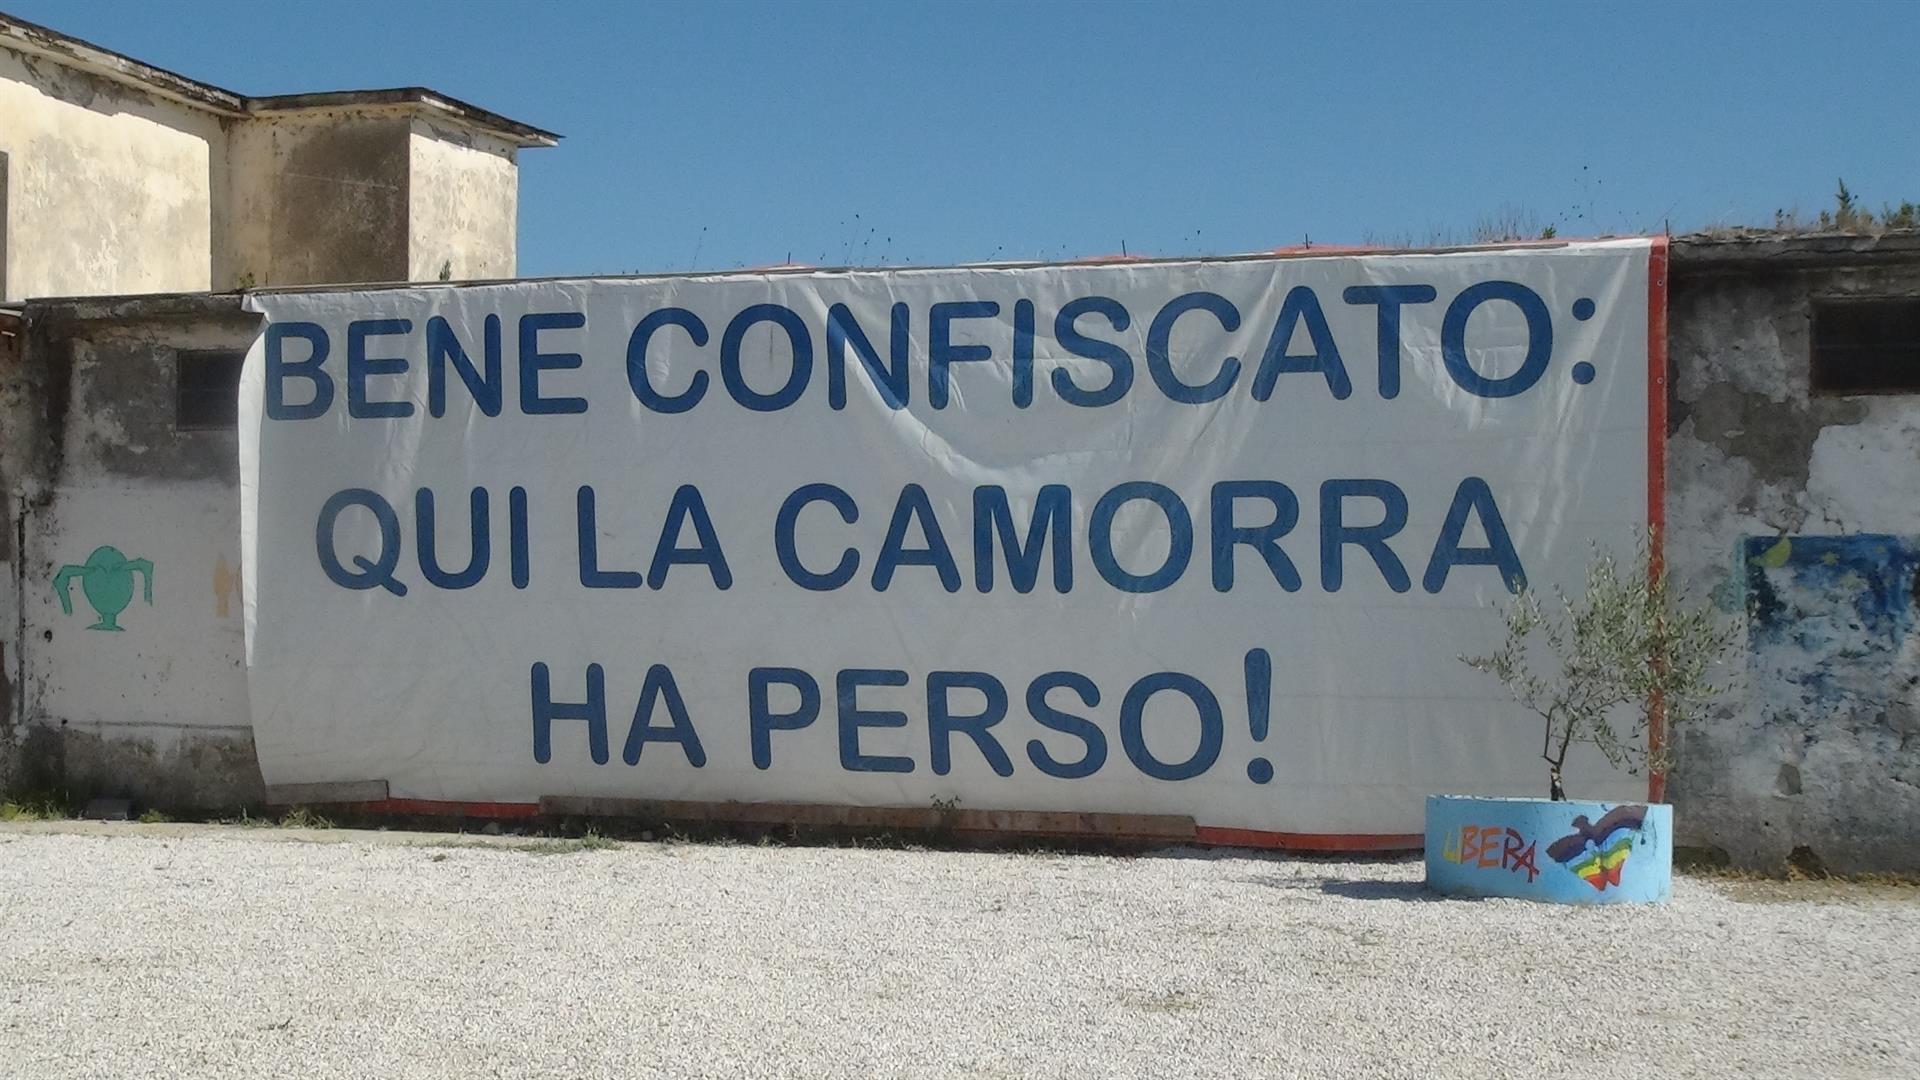 Beni tolti alla malavita, arrivano i fondi Pnrr: passano 75 progetti in Campania